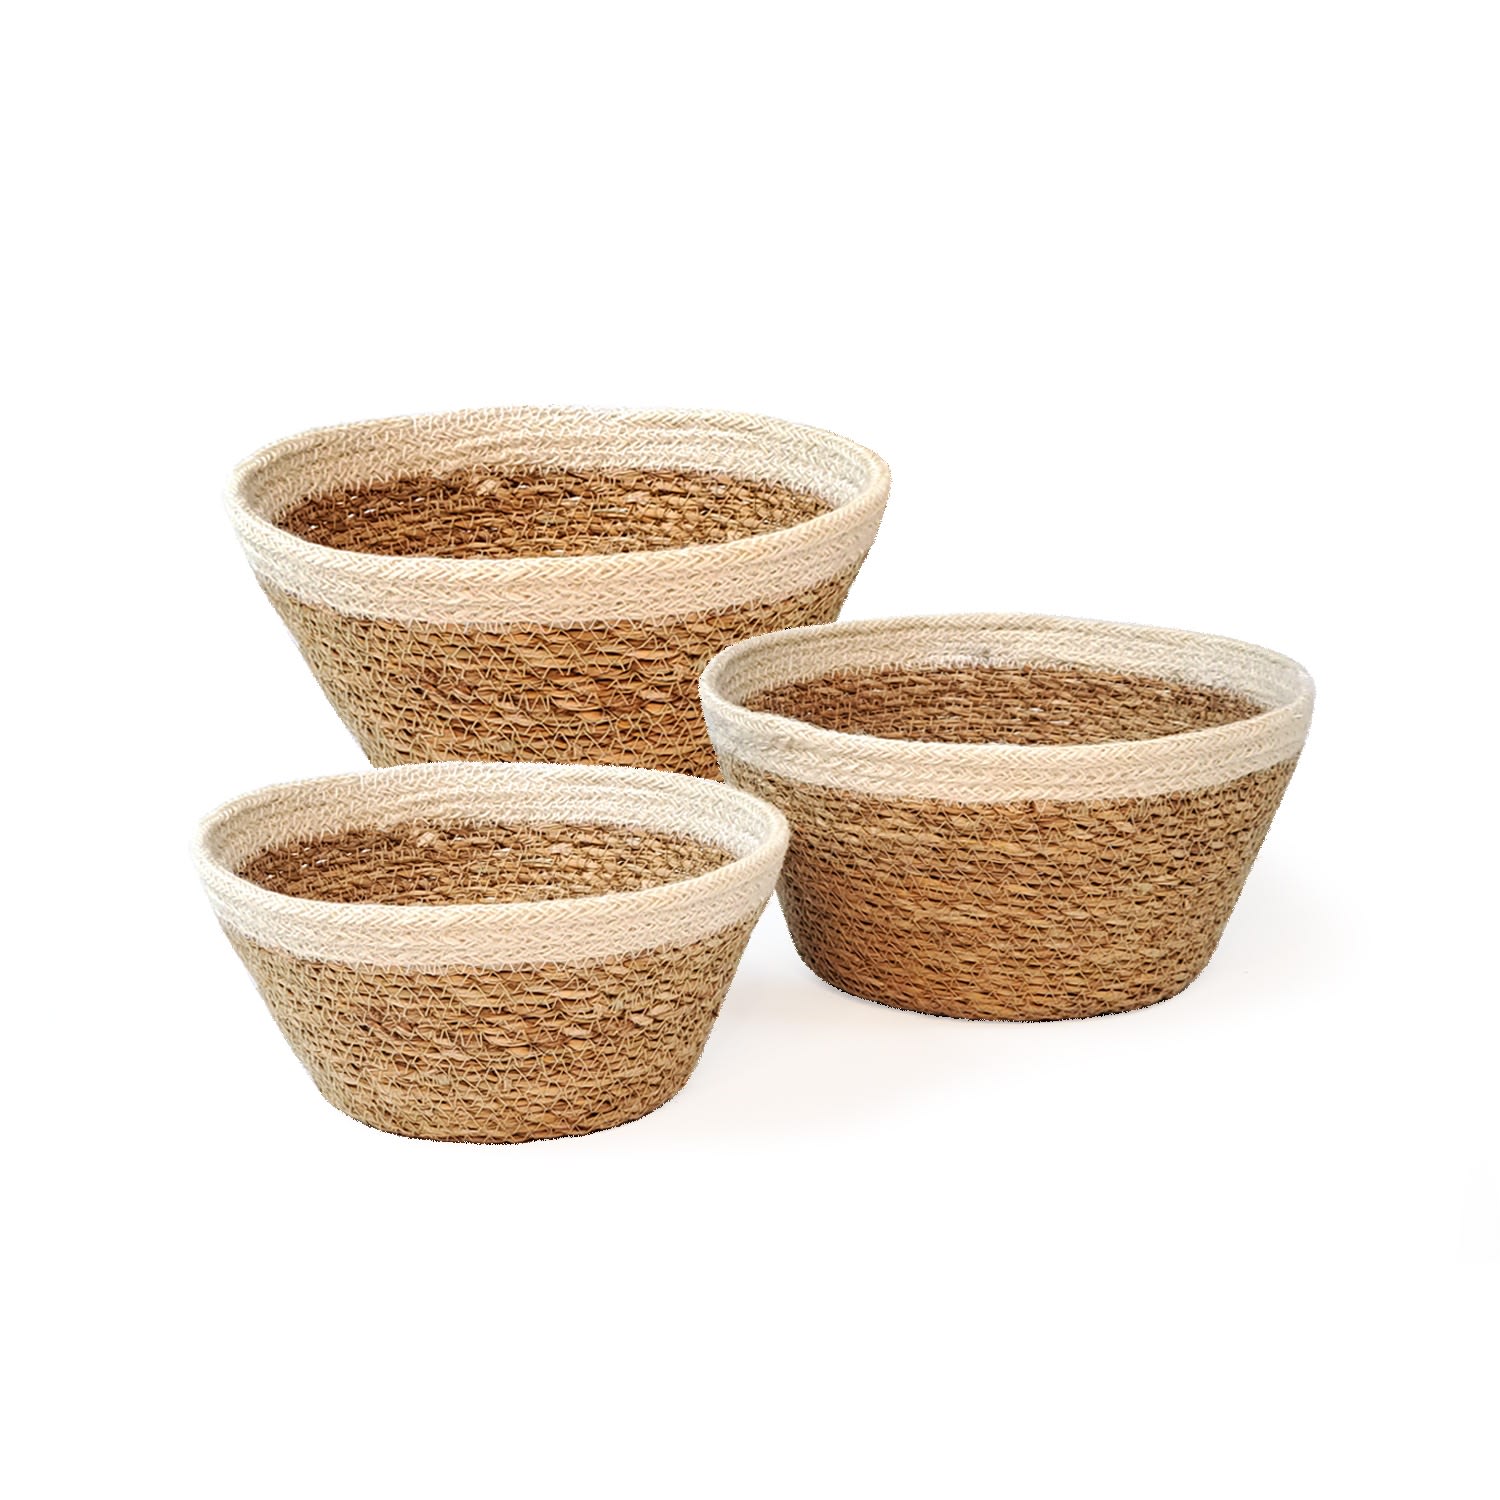 Korissa Neutrals Savar Plant Bowl - Set Of 3 In Brown